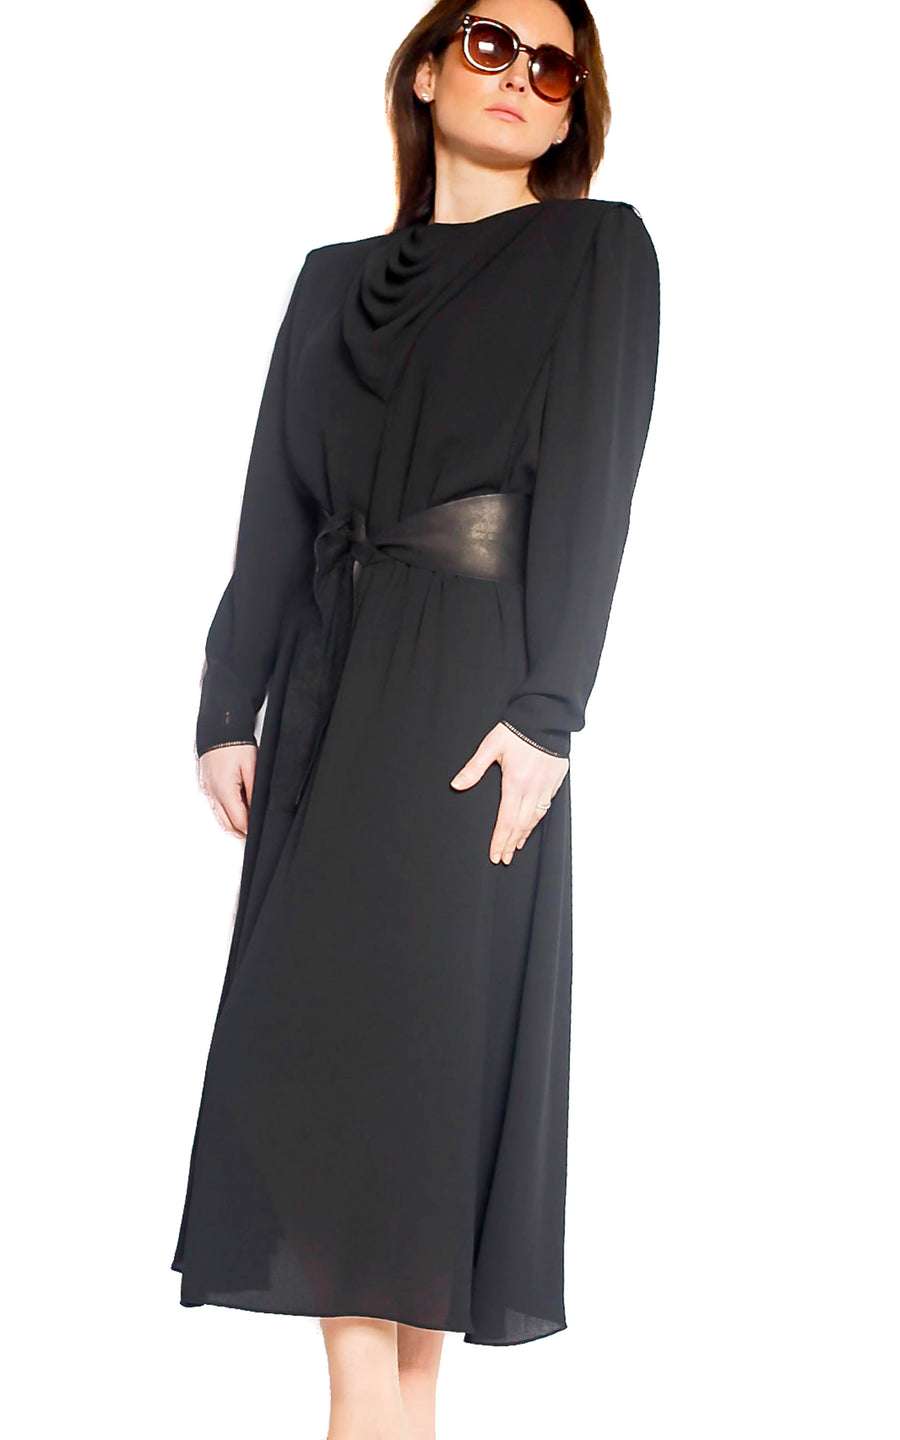 Vintage 1970s black midi dress